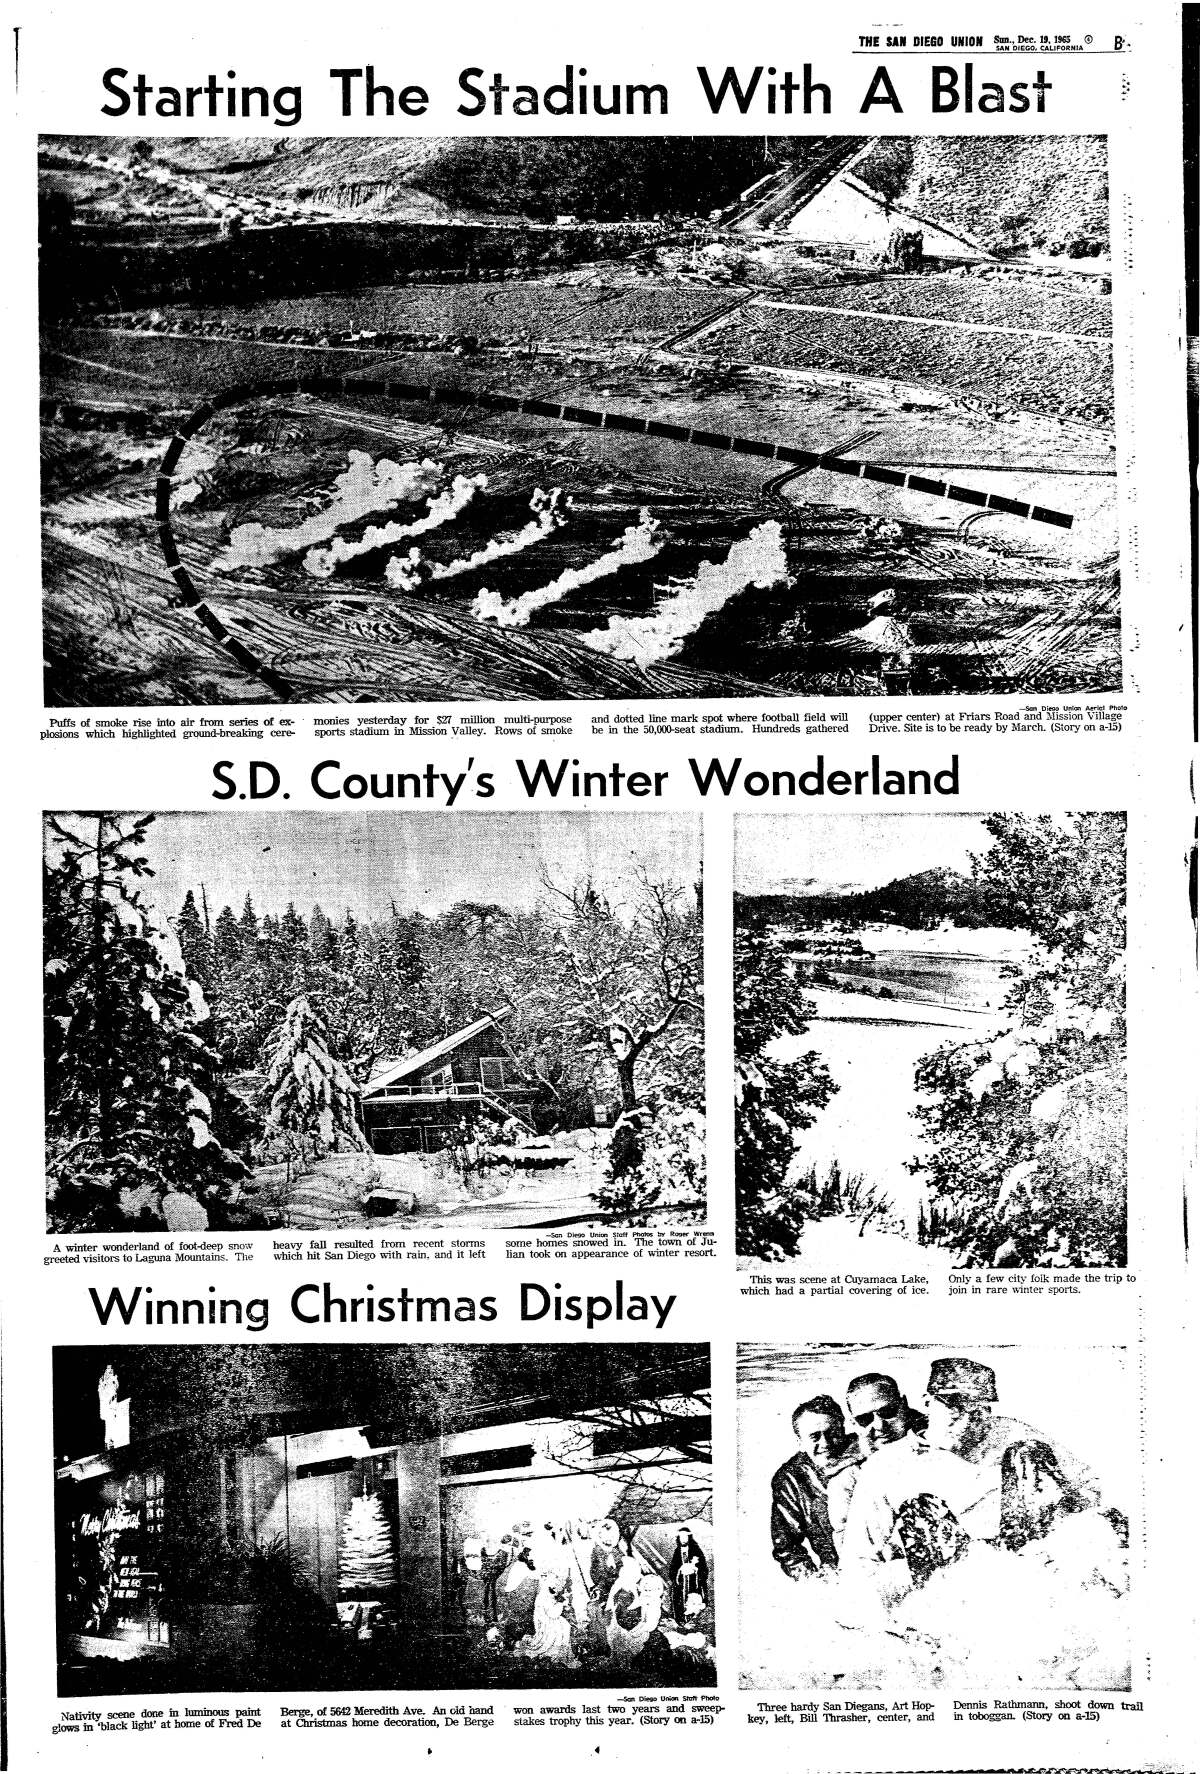  Photo of stadium groundbreaking published Dec. 19, 1965